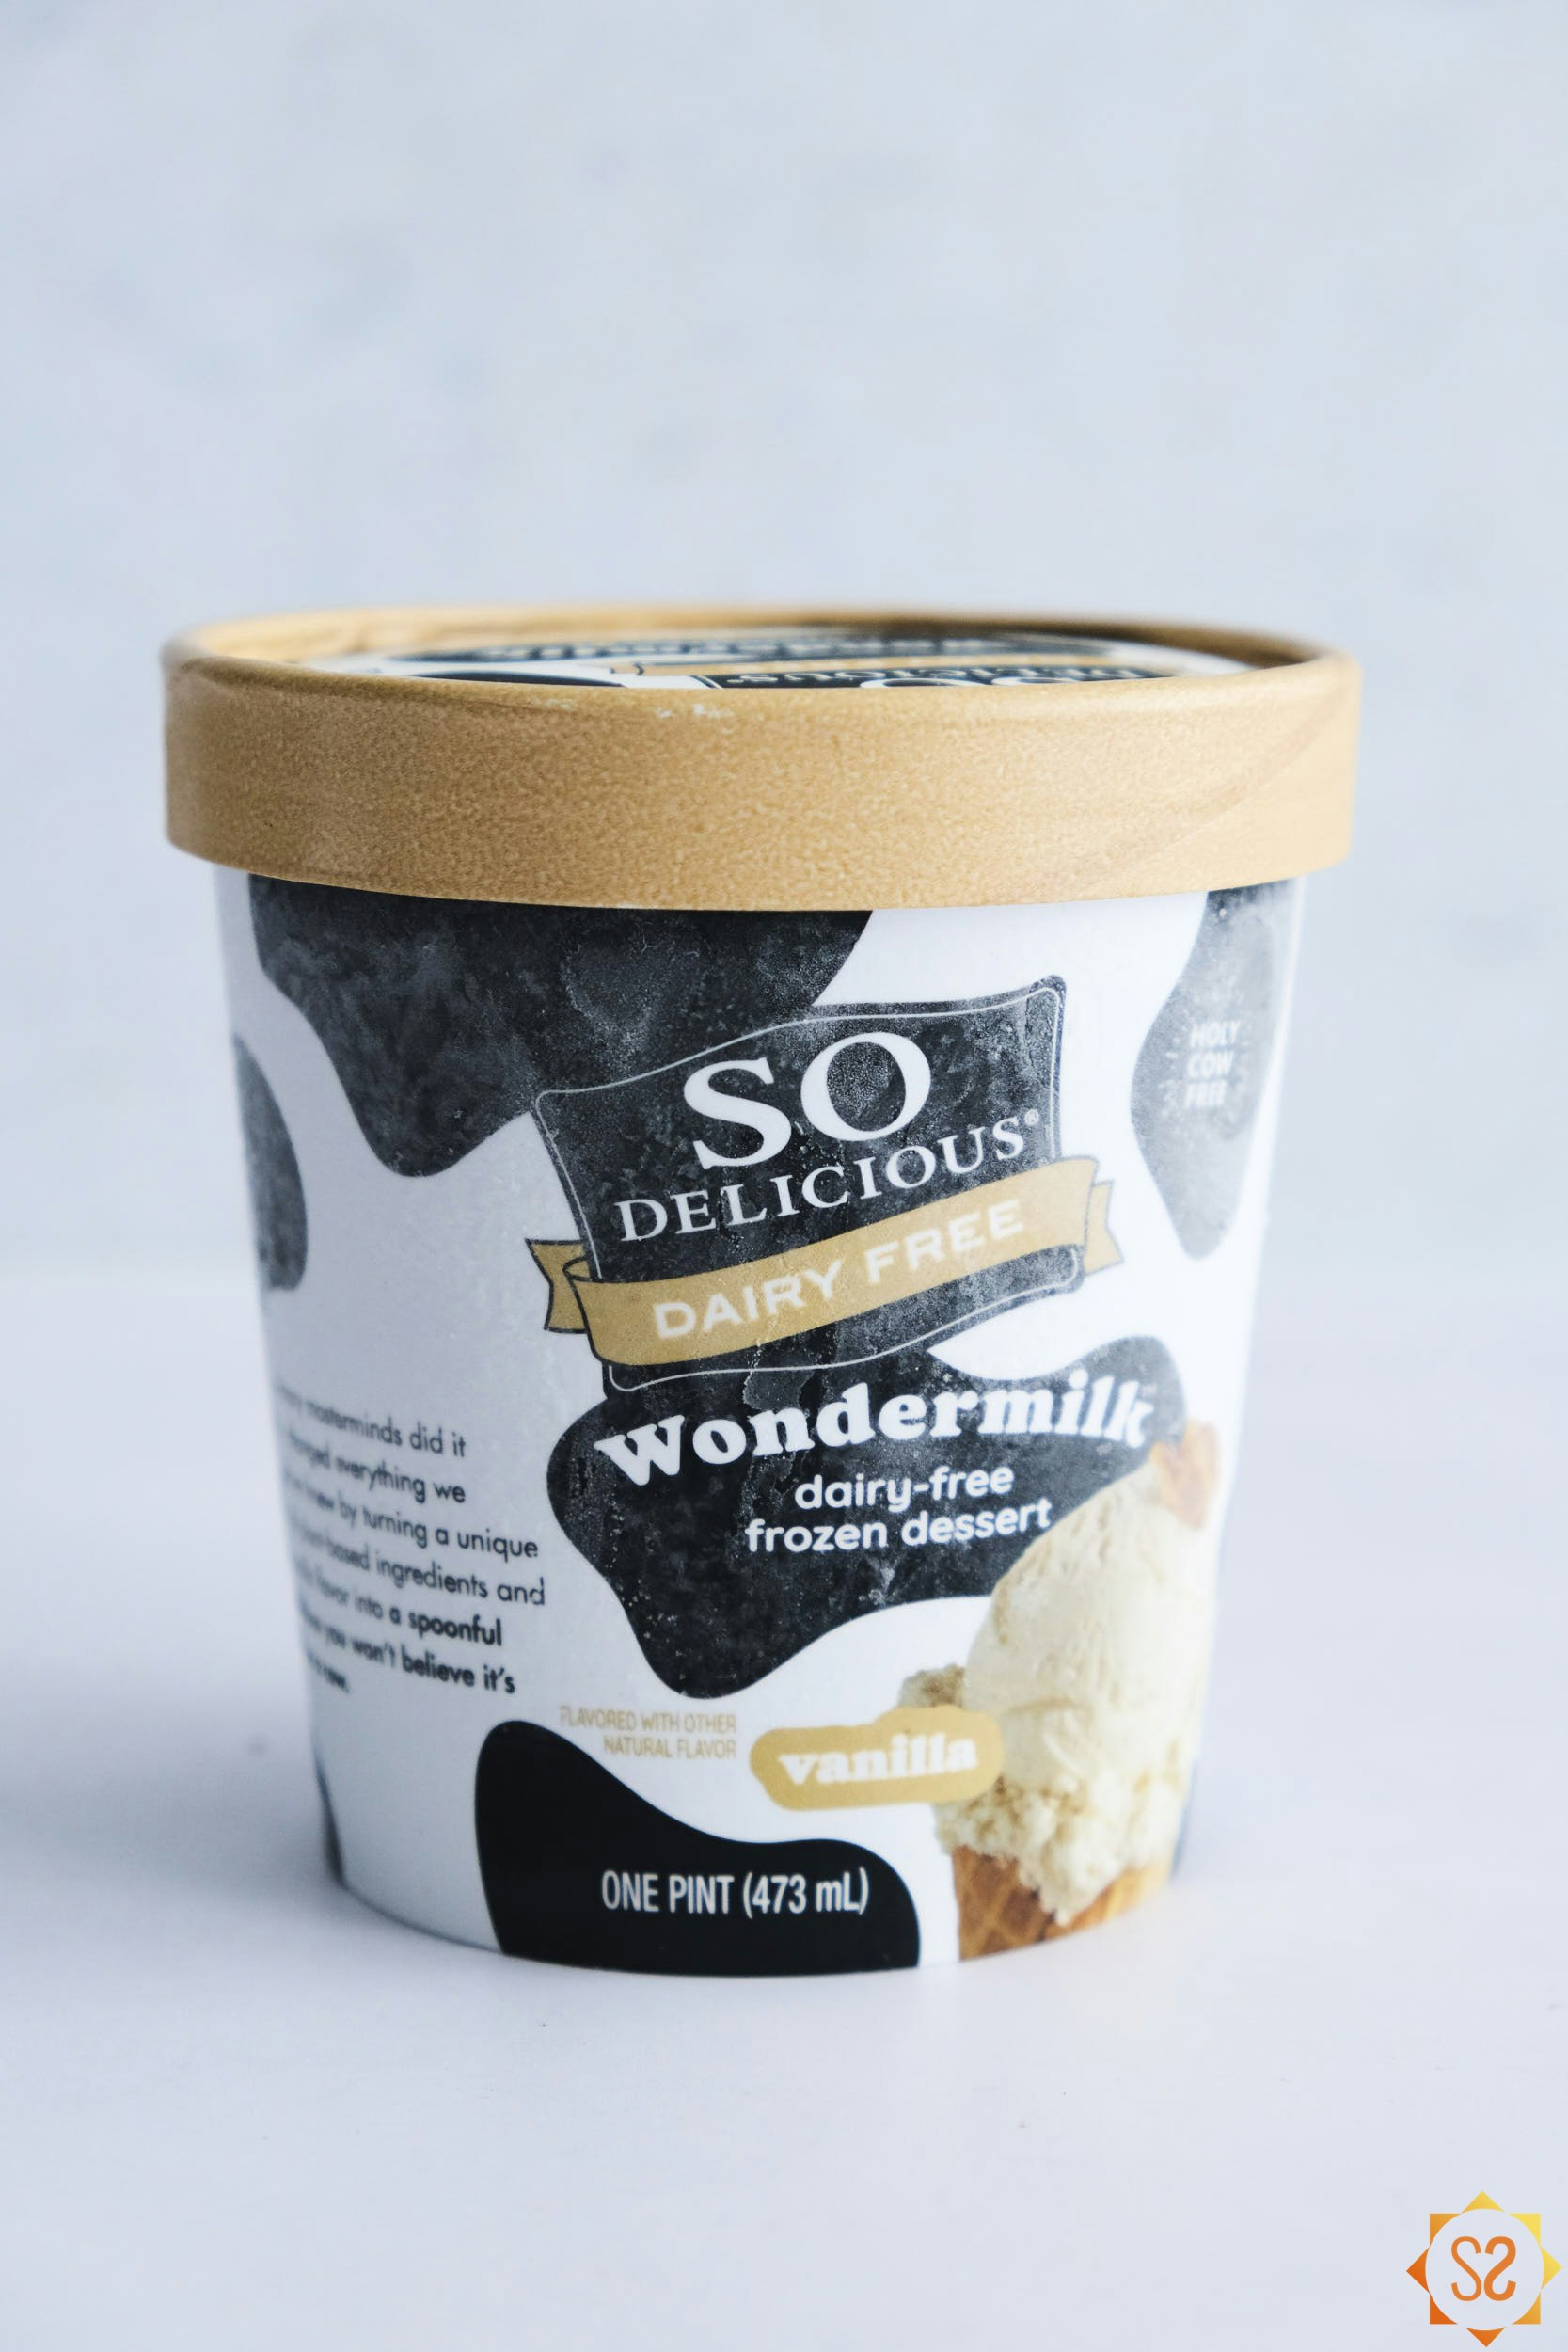 So Delicious Vanilla Wondermilk Frozen Dessert Package